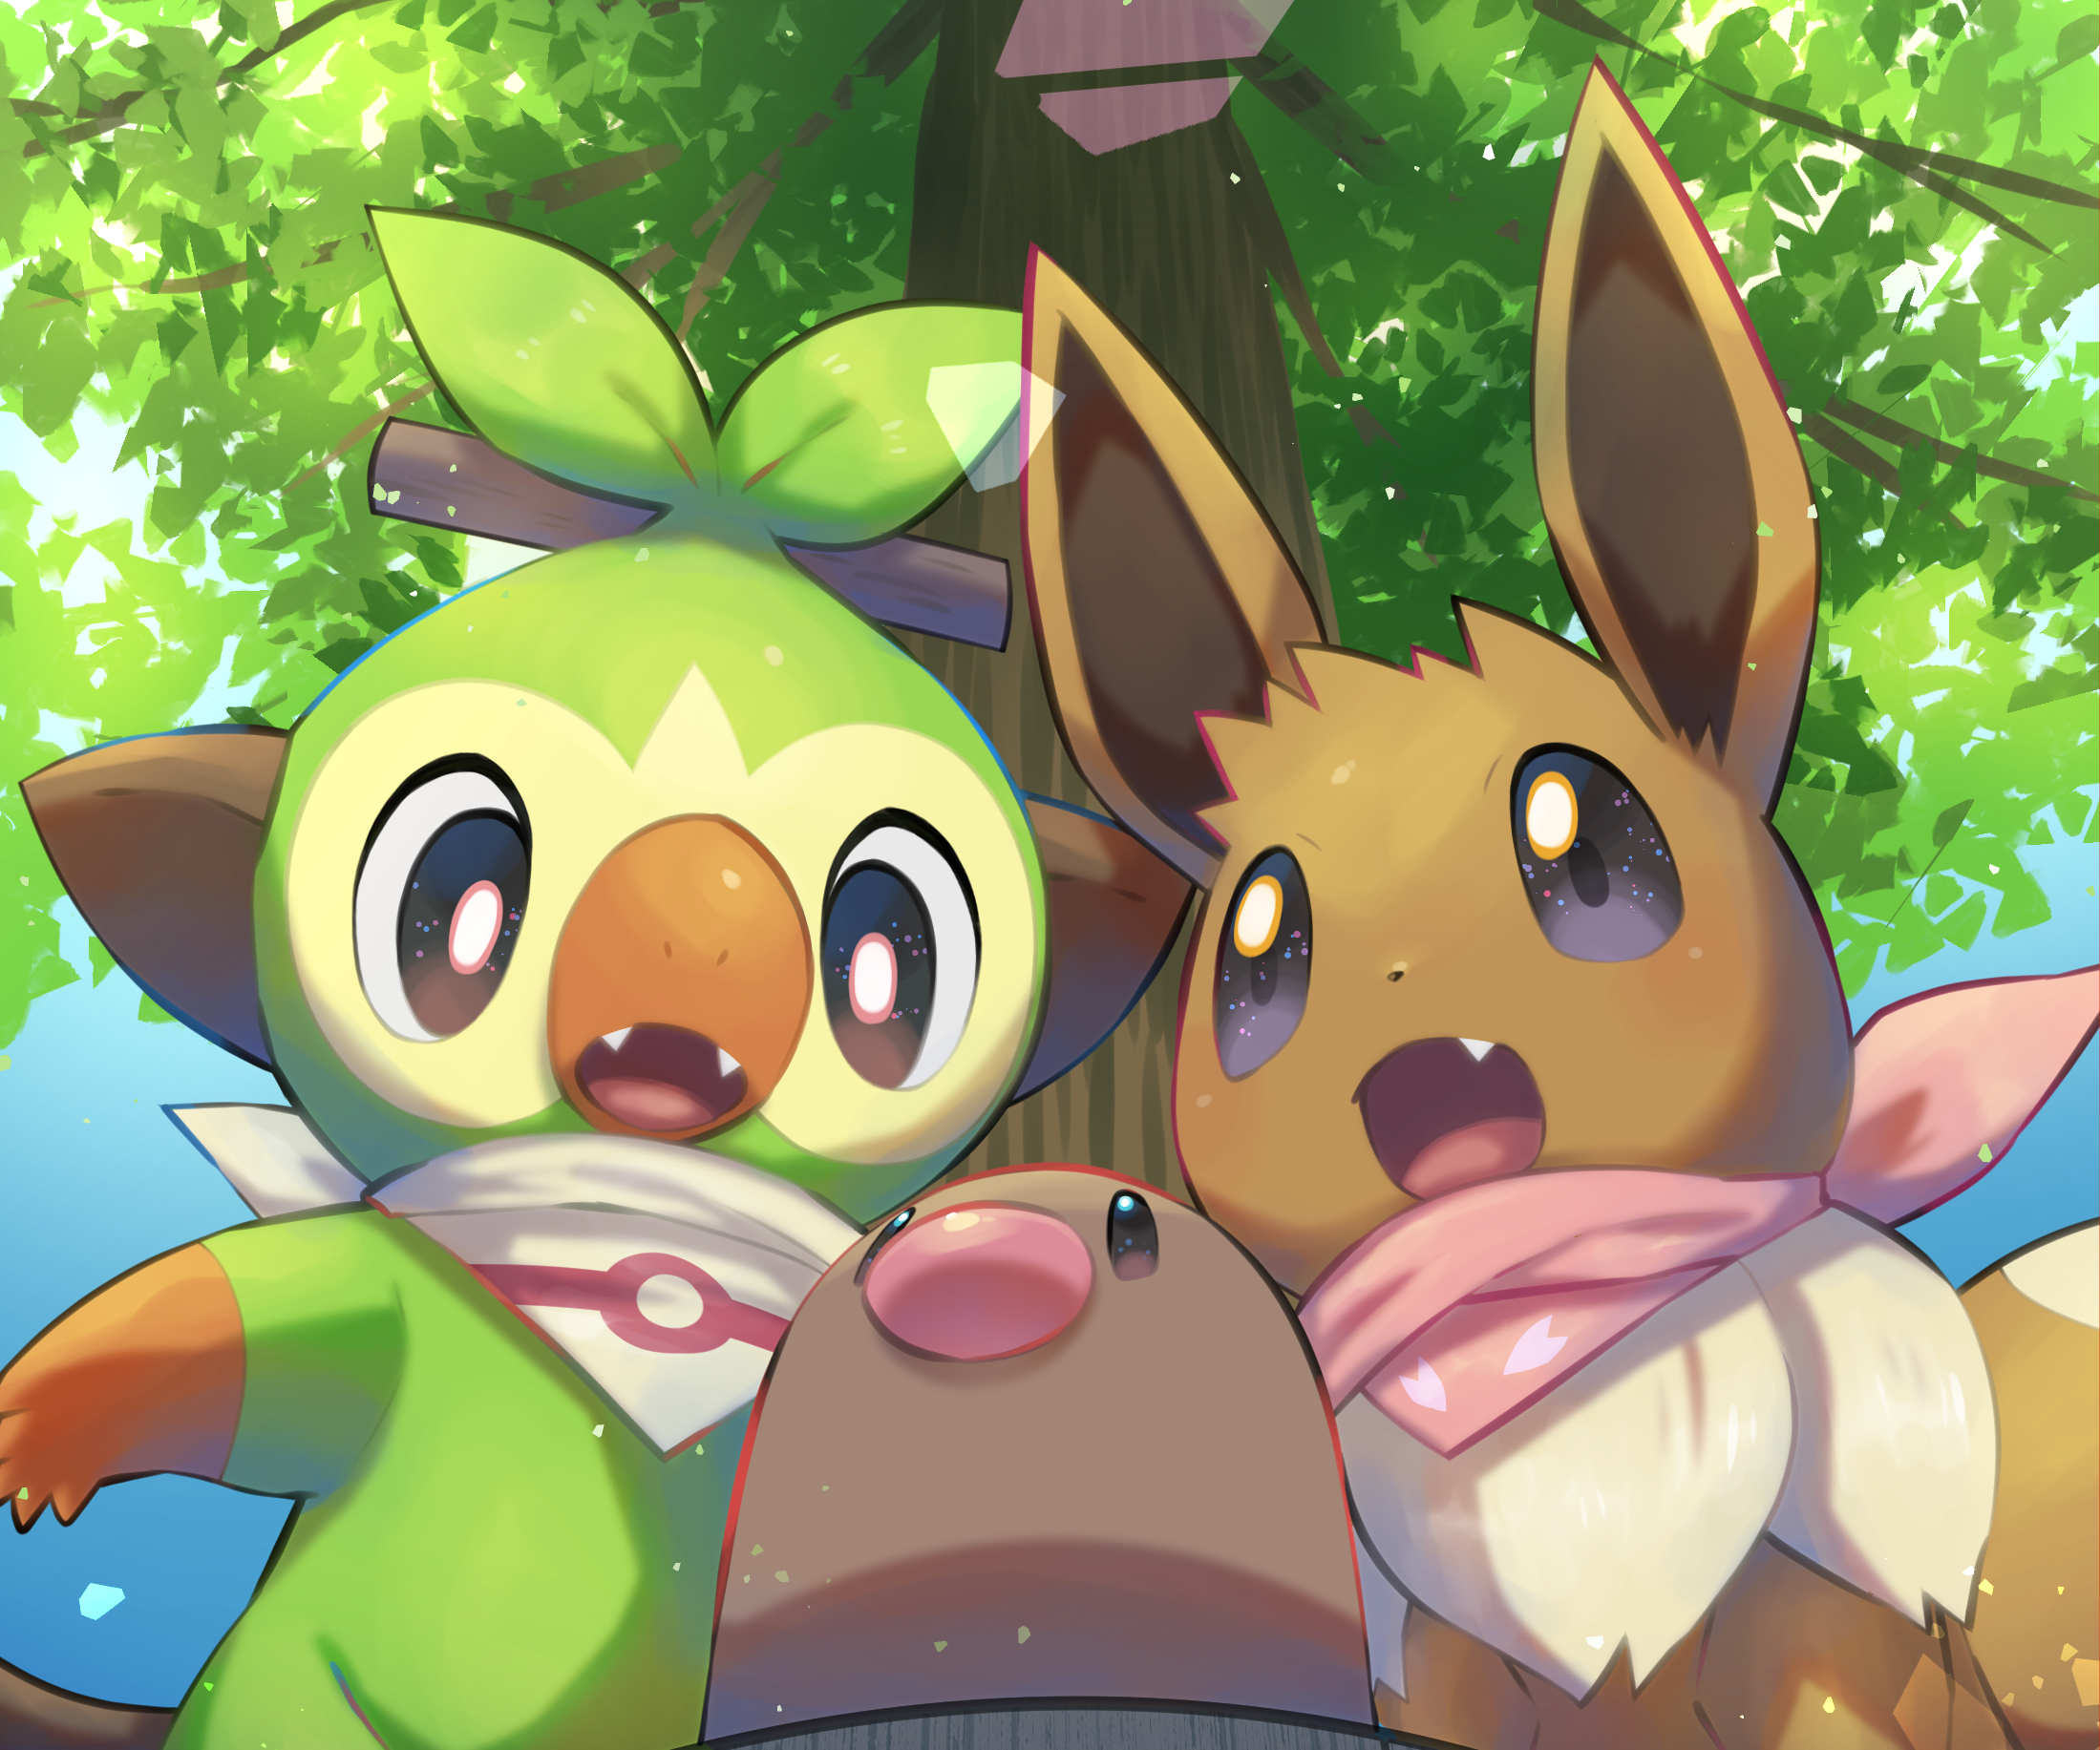 Cute Pikachu And Eevee Wallpapers